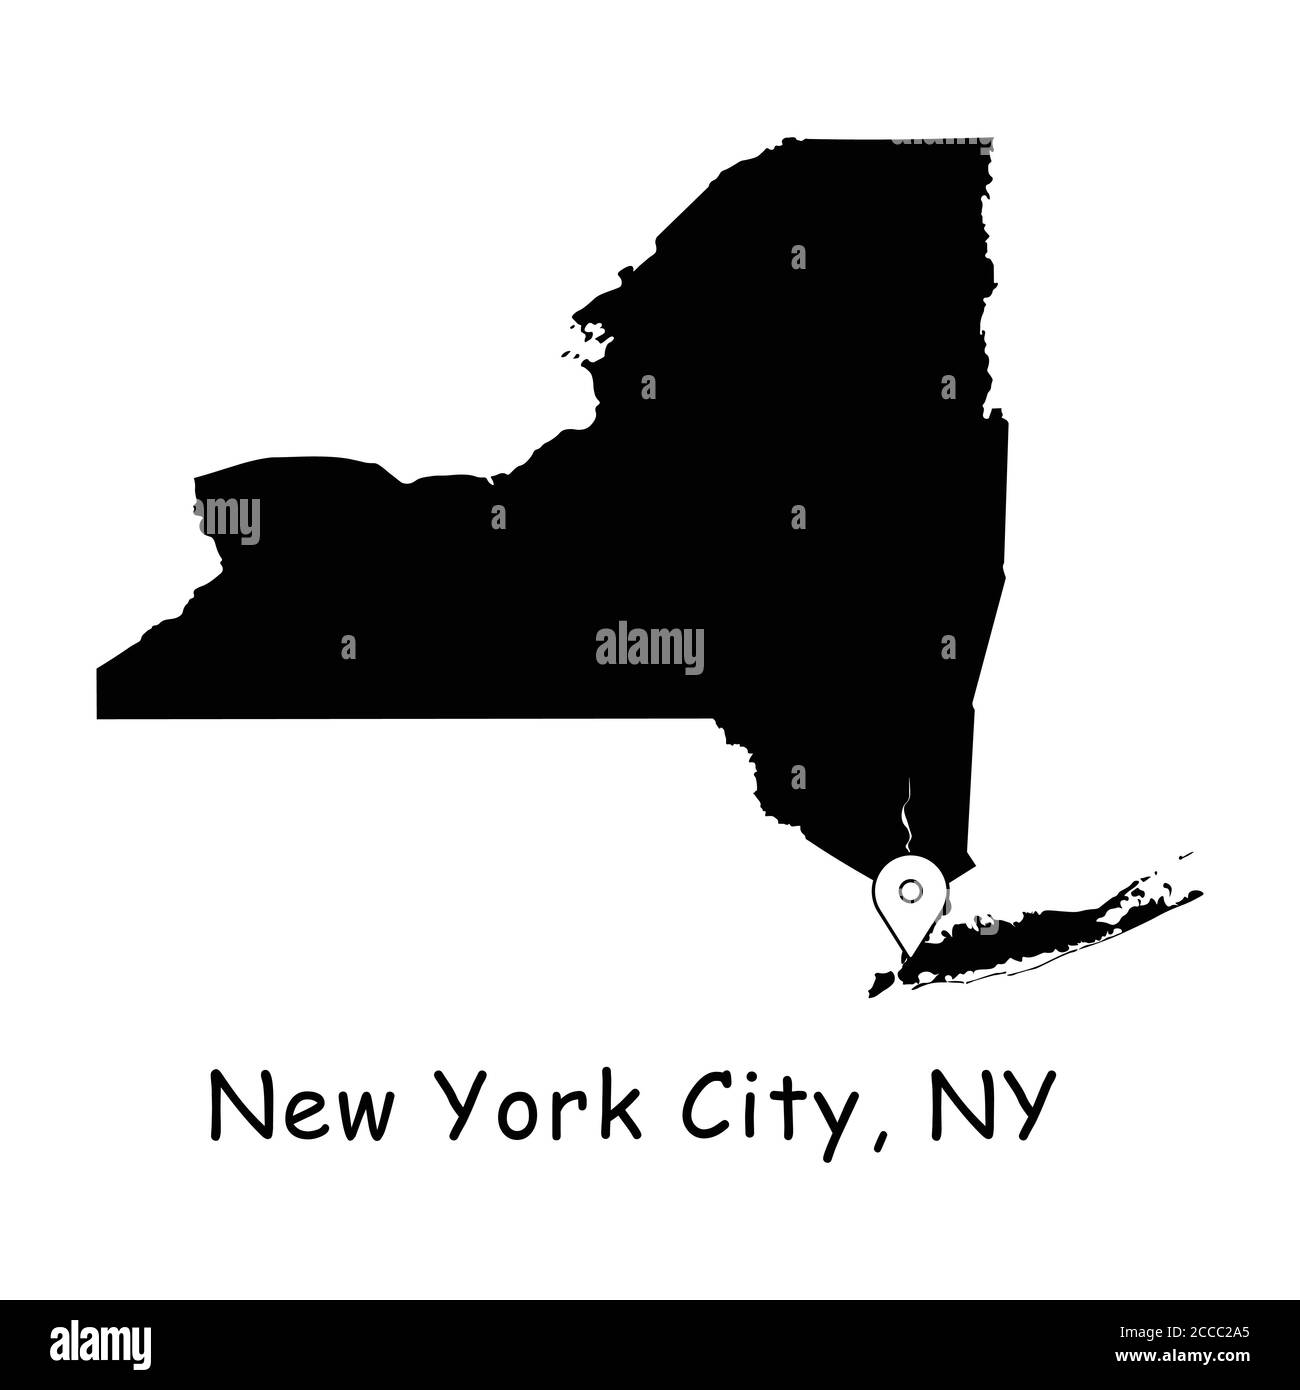 New York City sulla mappa dello stato di New York. Mappa dettagliata dello stato di New York con pin sulla città di New York. Mappe vettoriali di silhouette nere isolate su sfondo bianco. Illustrazione Vettoriale